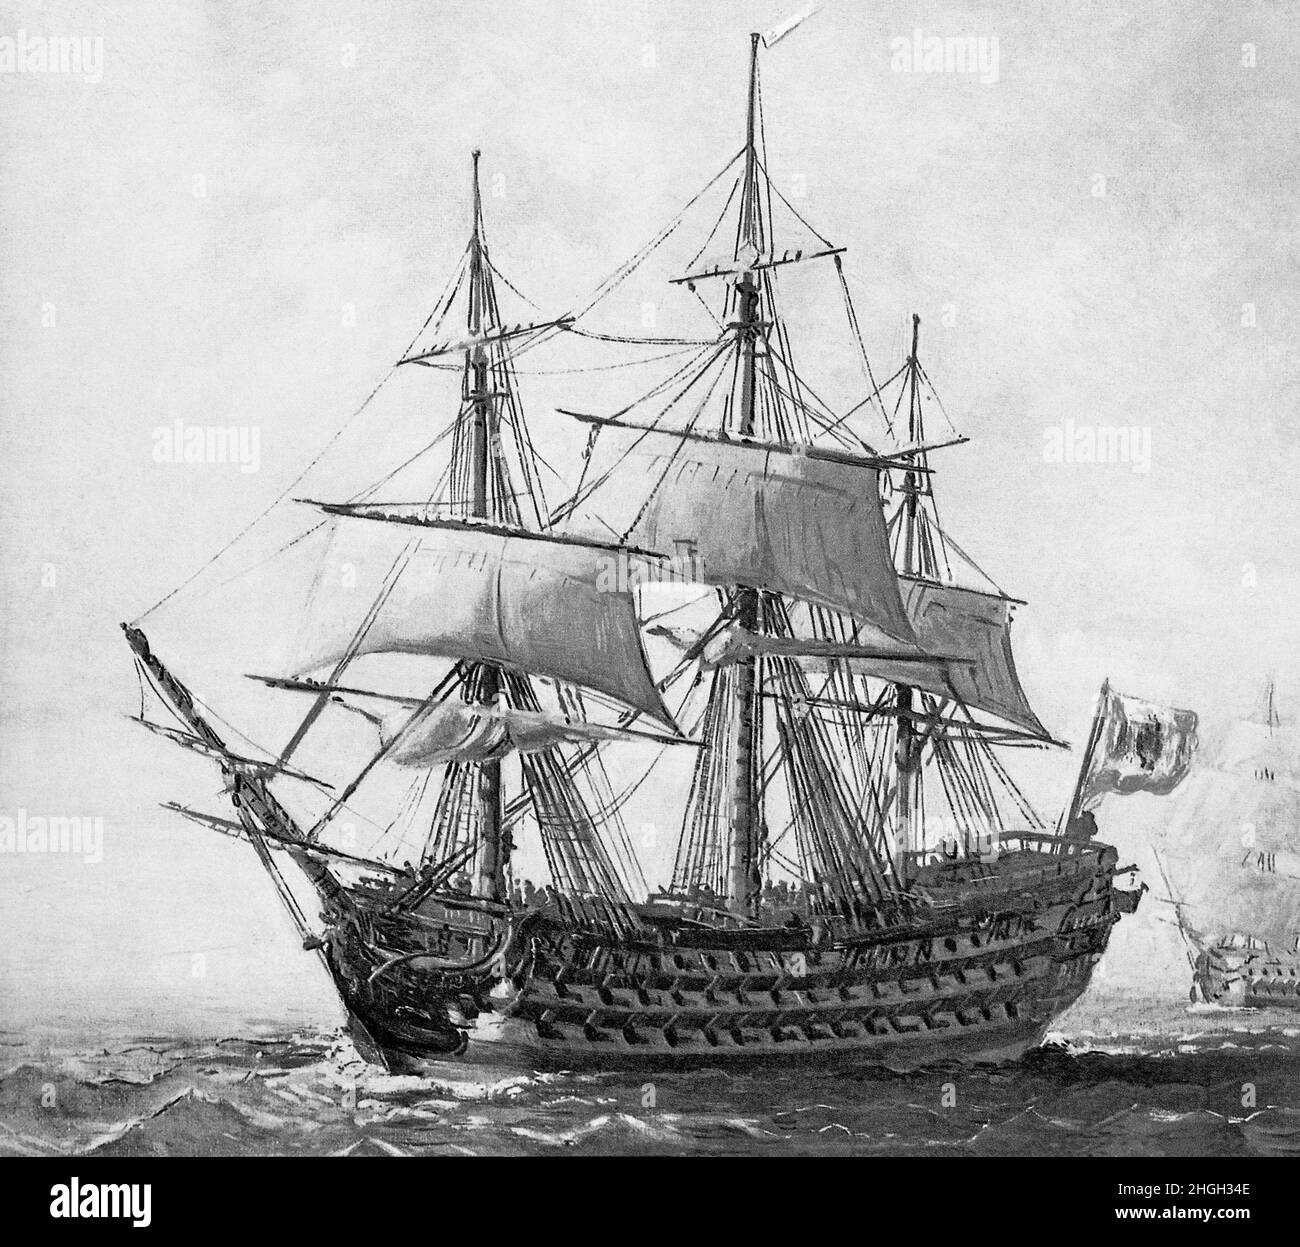 Eine monochrome Illustration des spanischen Linienschiffs "San Hermenegildo", einem Kanonenschiff aus dem Jahr 112, das 1789 in Havanna, Kuba, gestartet wurde. Während der Schlacht von Algeciras Bay im Juli 1801 wurde das Schiff zerstört, als die 'Superb' ein britisches Schiff abfeuerte und die San Hermenegildo traf. Ein weiteres spanisches Schiff, der Real Carlos, wurde in Brand gesteckt und die beiden spanischen Schiffe verwechselten sich gegenseitig für britische Schiffe und begannen ein wütendes Duell, bis ein plötzlicher Windstoß die beiden Schiffe zusammenbrachte und ihre Takelage verwickelte. Die Hermenegildo geriet ebenfalls in Brand und die beiden Schiffe explodierten. Stockfoto